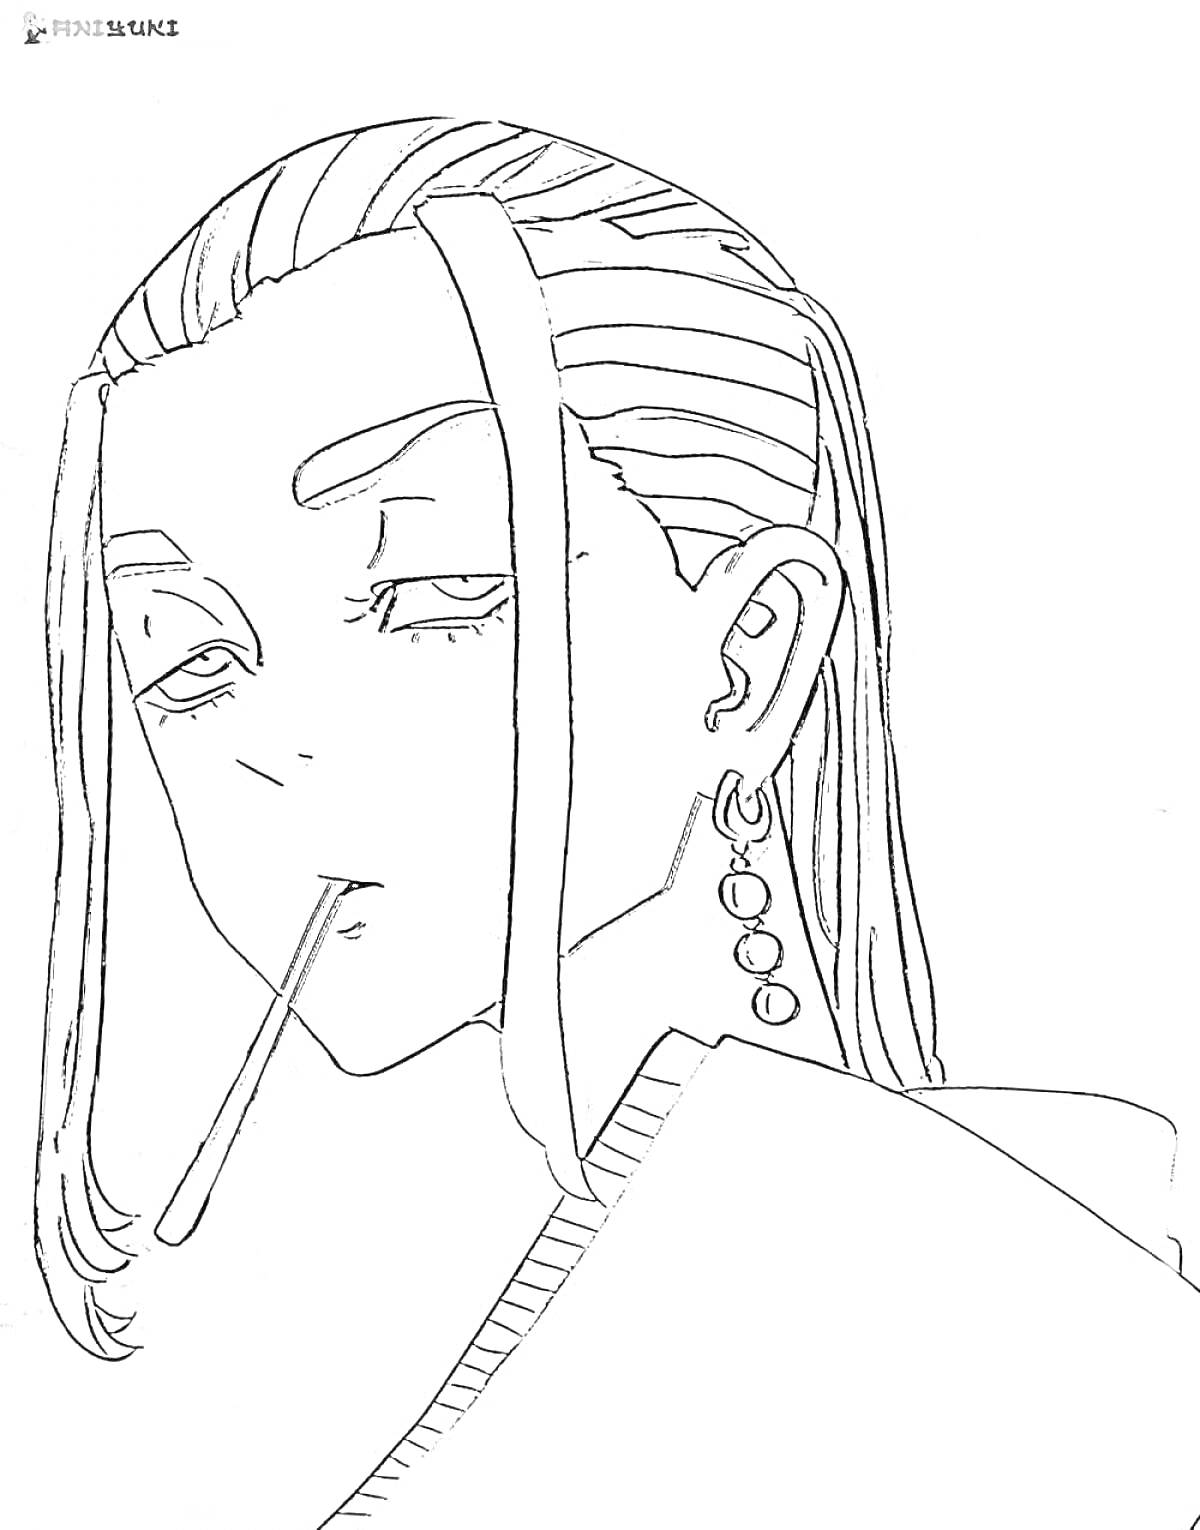 Раскраска Человек с длинными волосами и сигаретой, с сережками и рисунком на голове